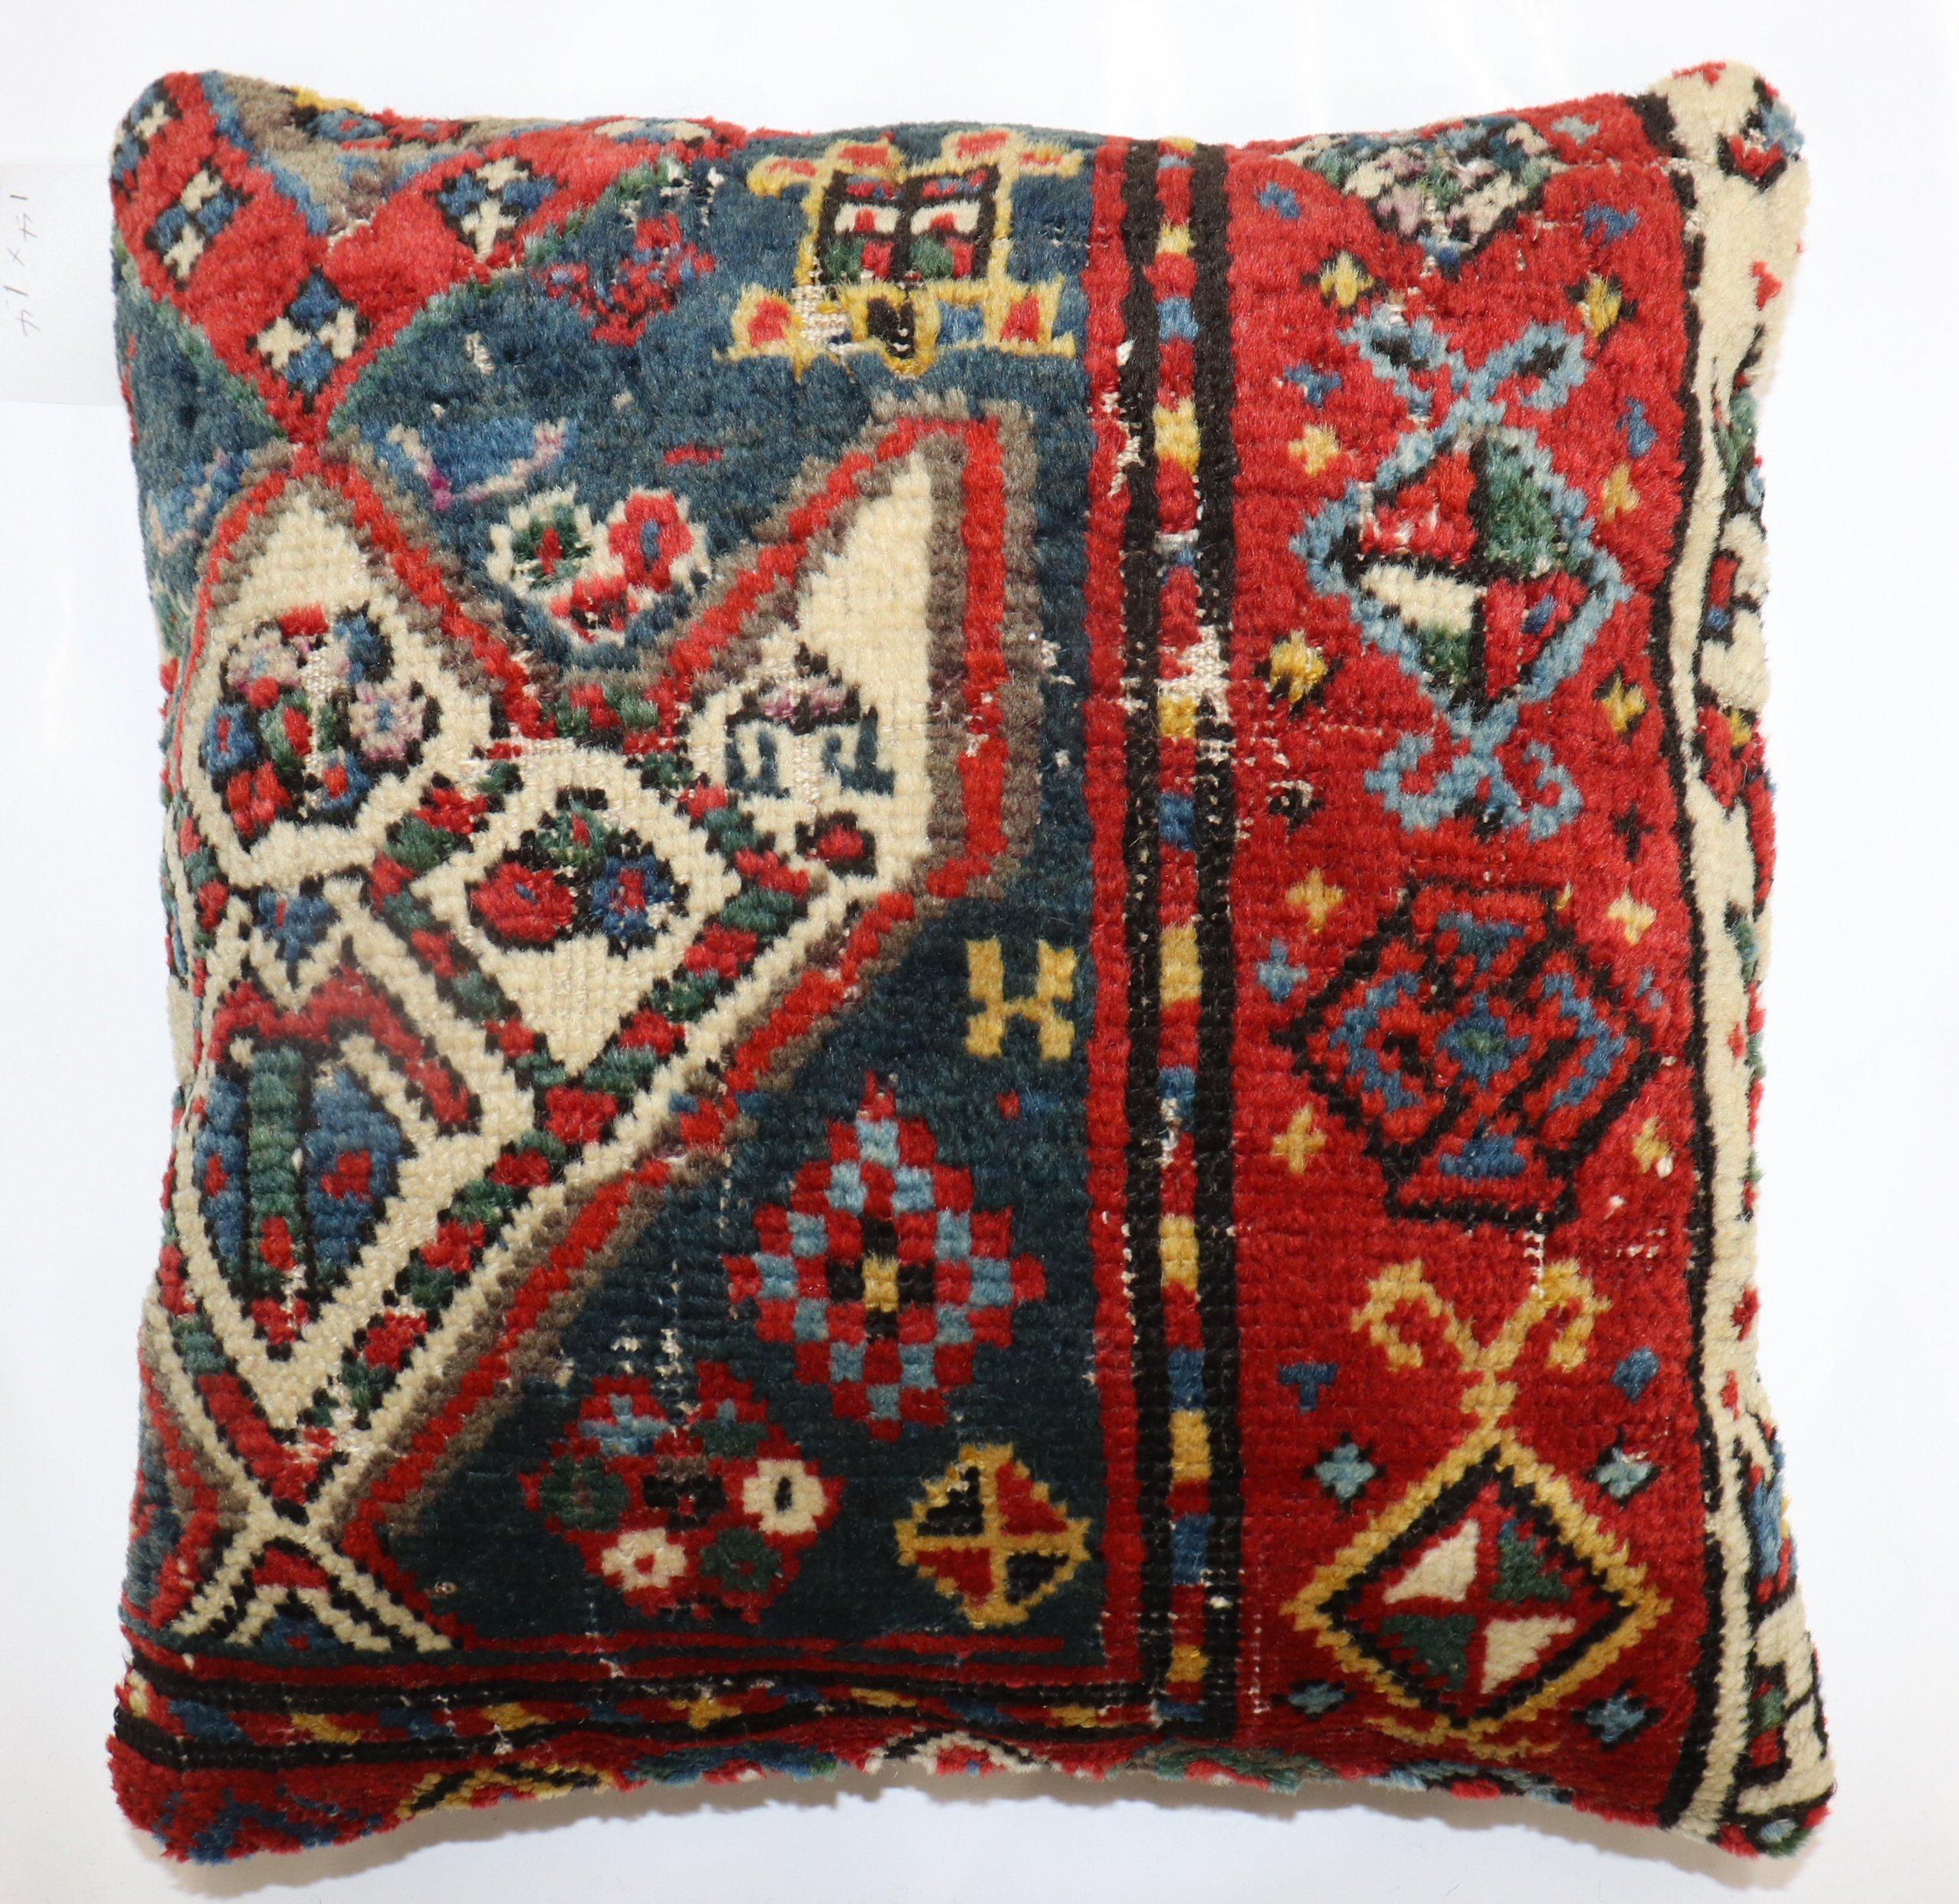 Kissen aus einem kaukasischen Teppich aus dem frühen 20. Jahrhundert. Mit Reißverschluss und Poly-Fill-Einlage.

Maße: 16